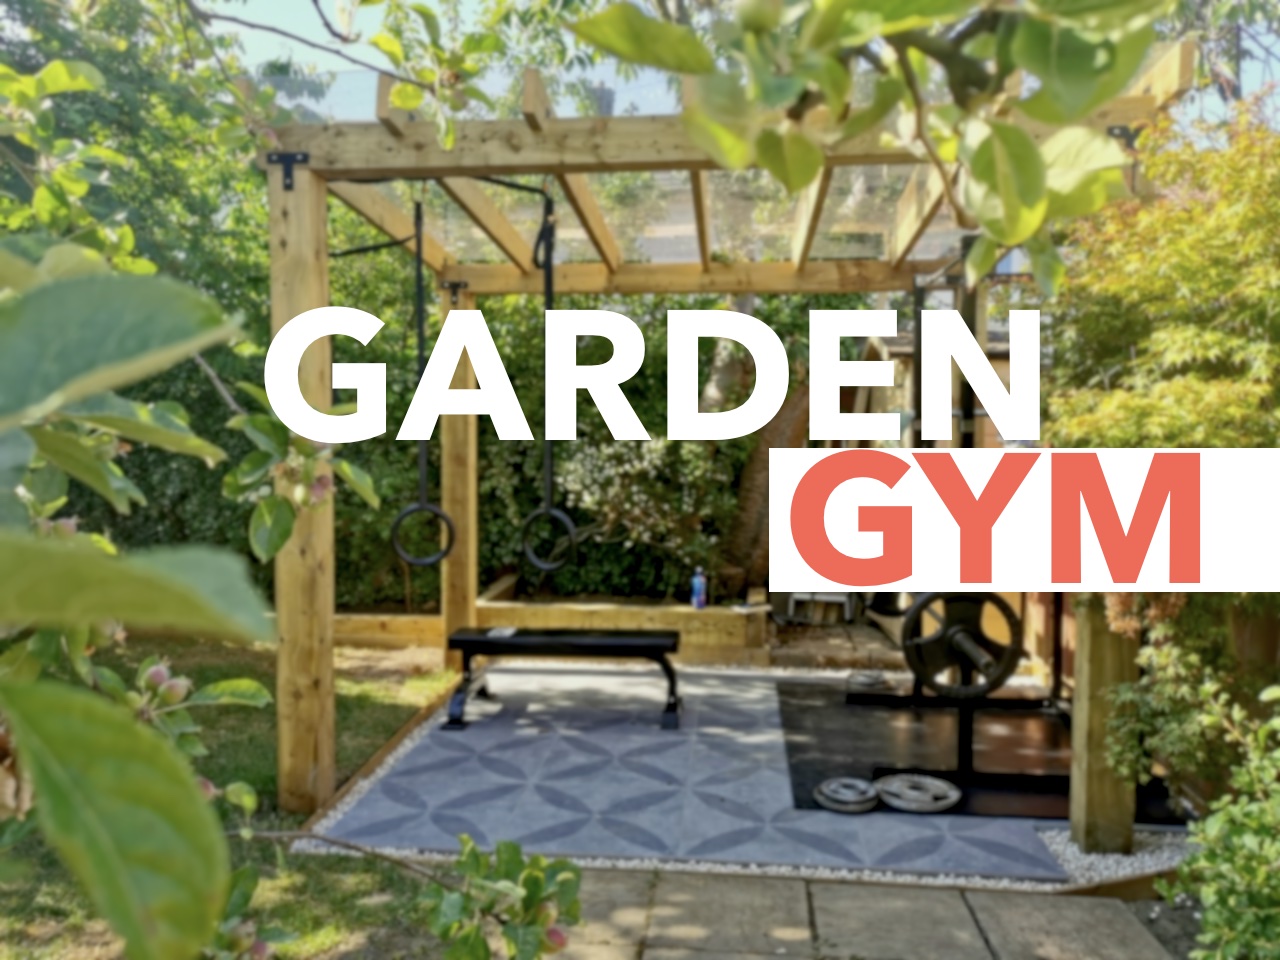 Garden gym